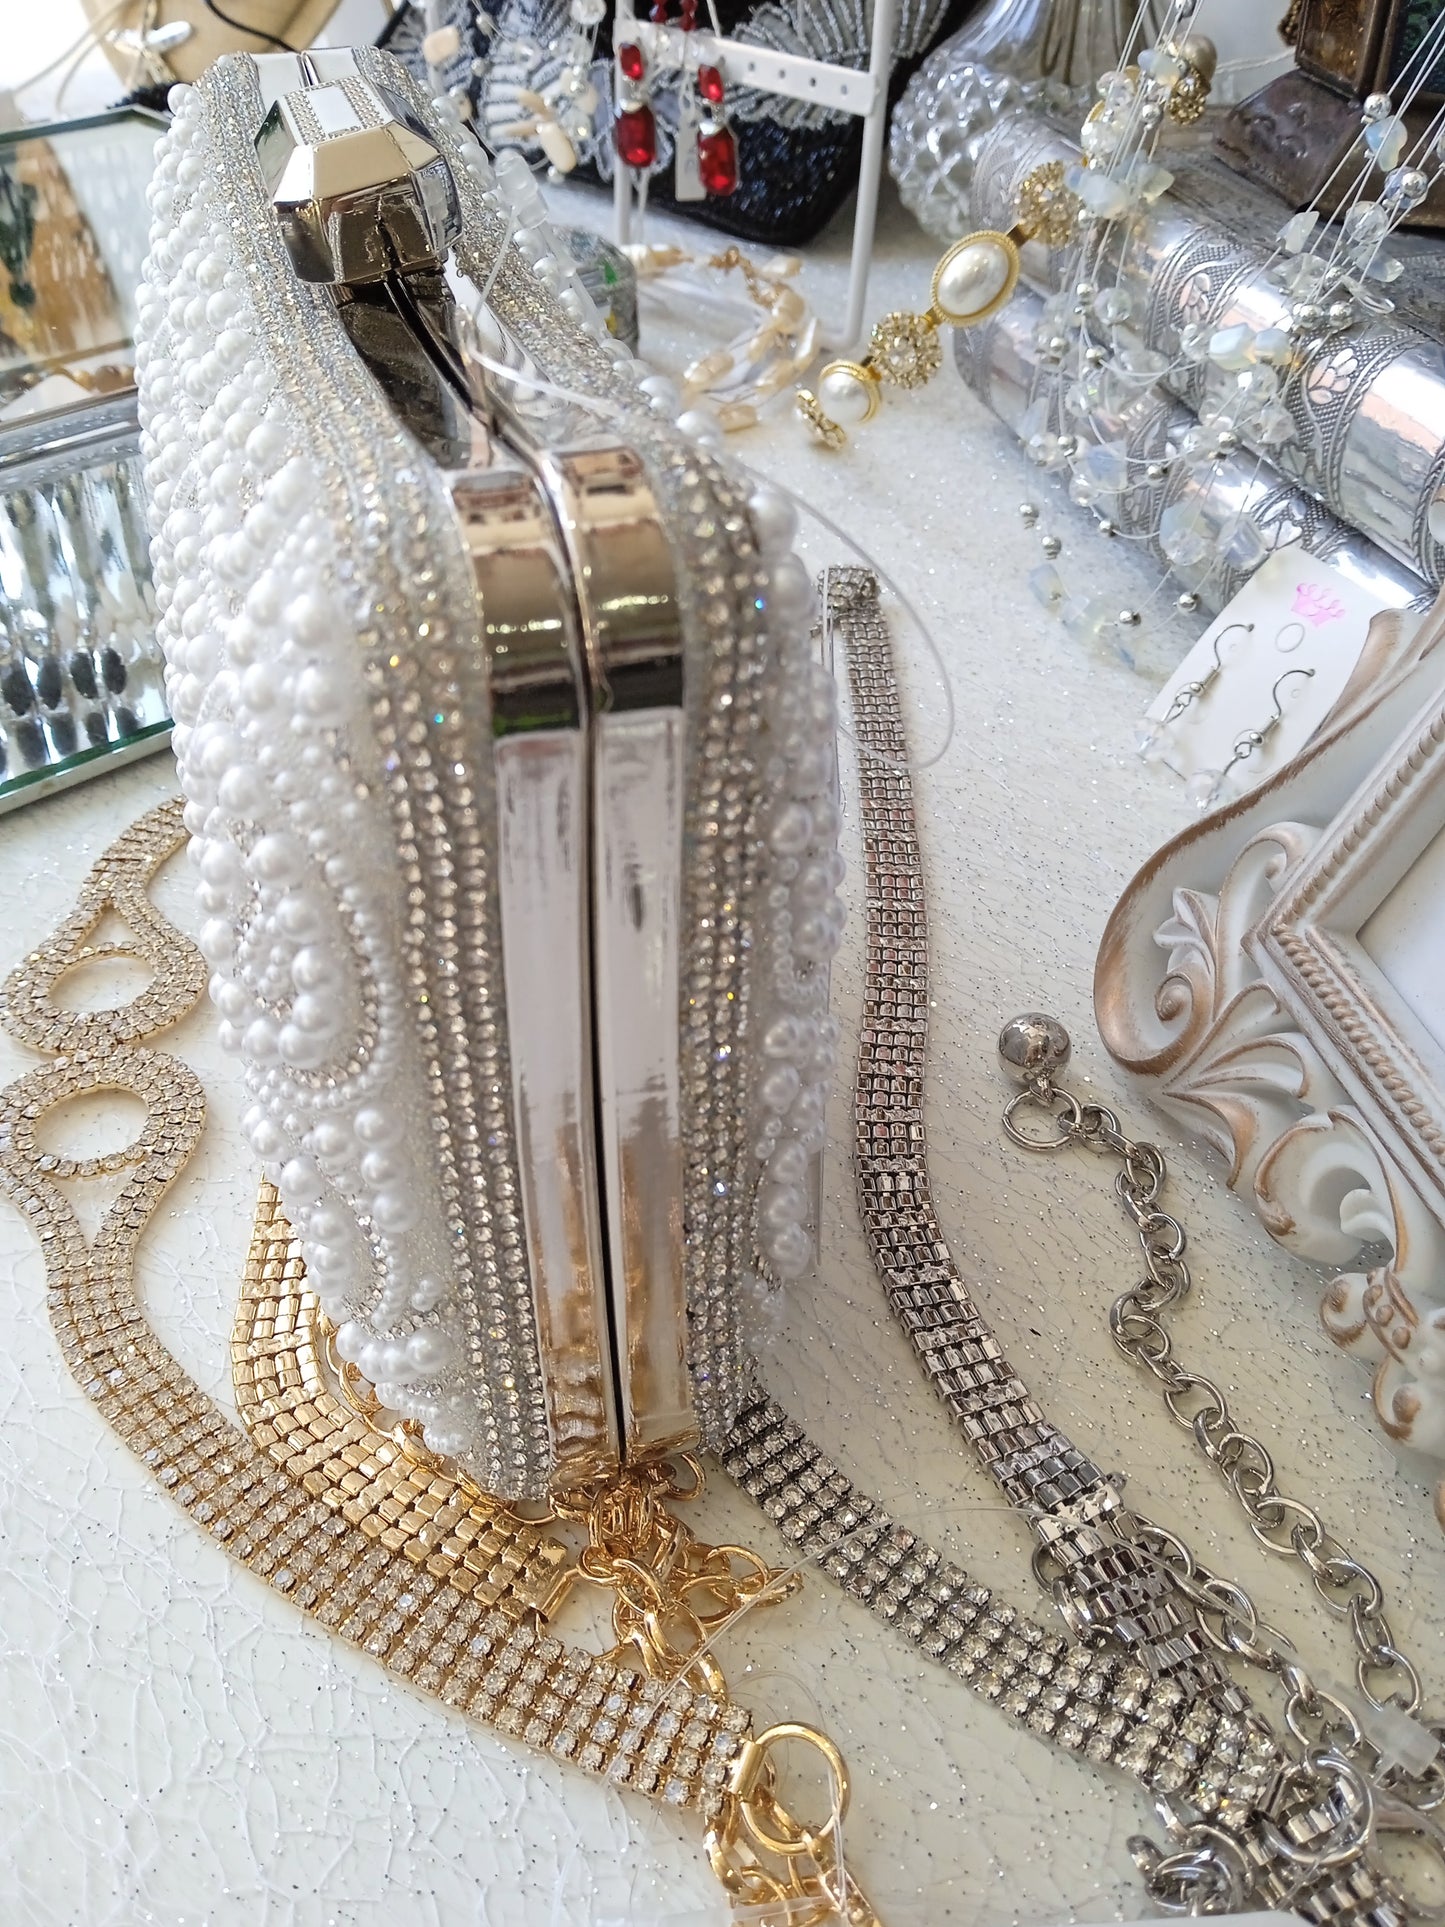 Bolso joya perlas con colgador de cadena corto y largo  Blanco y plata